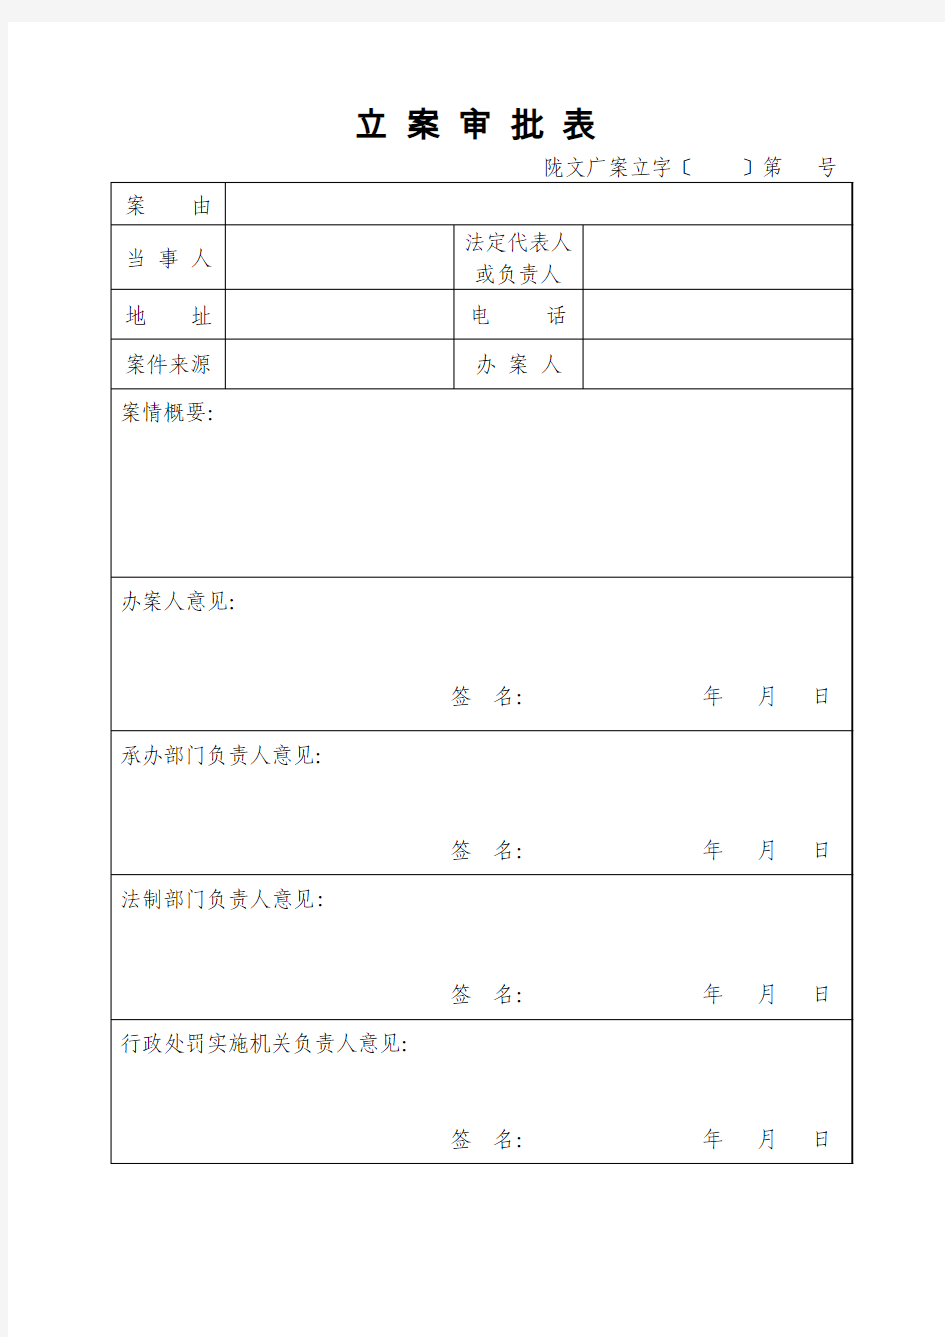 文化部文化市场综合执法统一格式文书(2010年7月起使用)